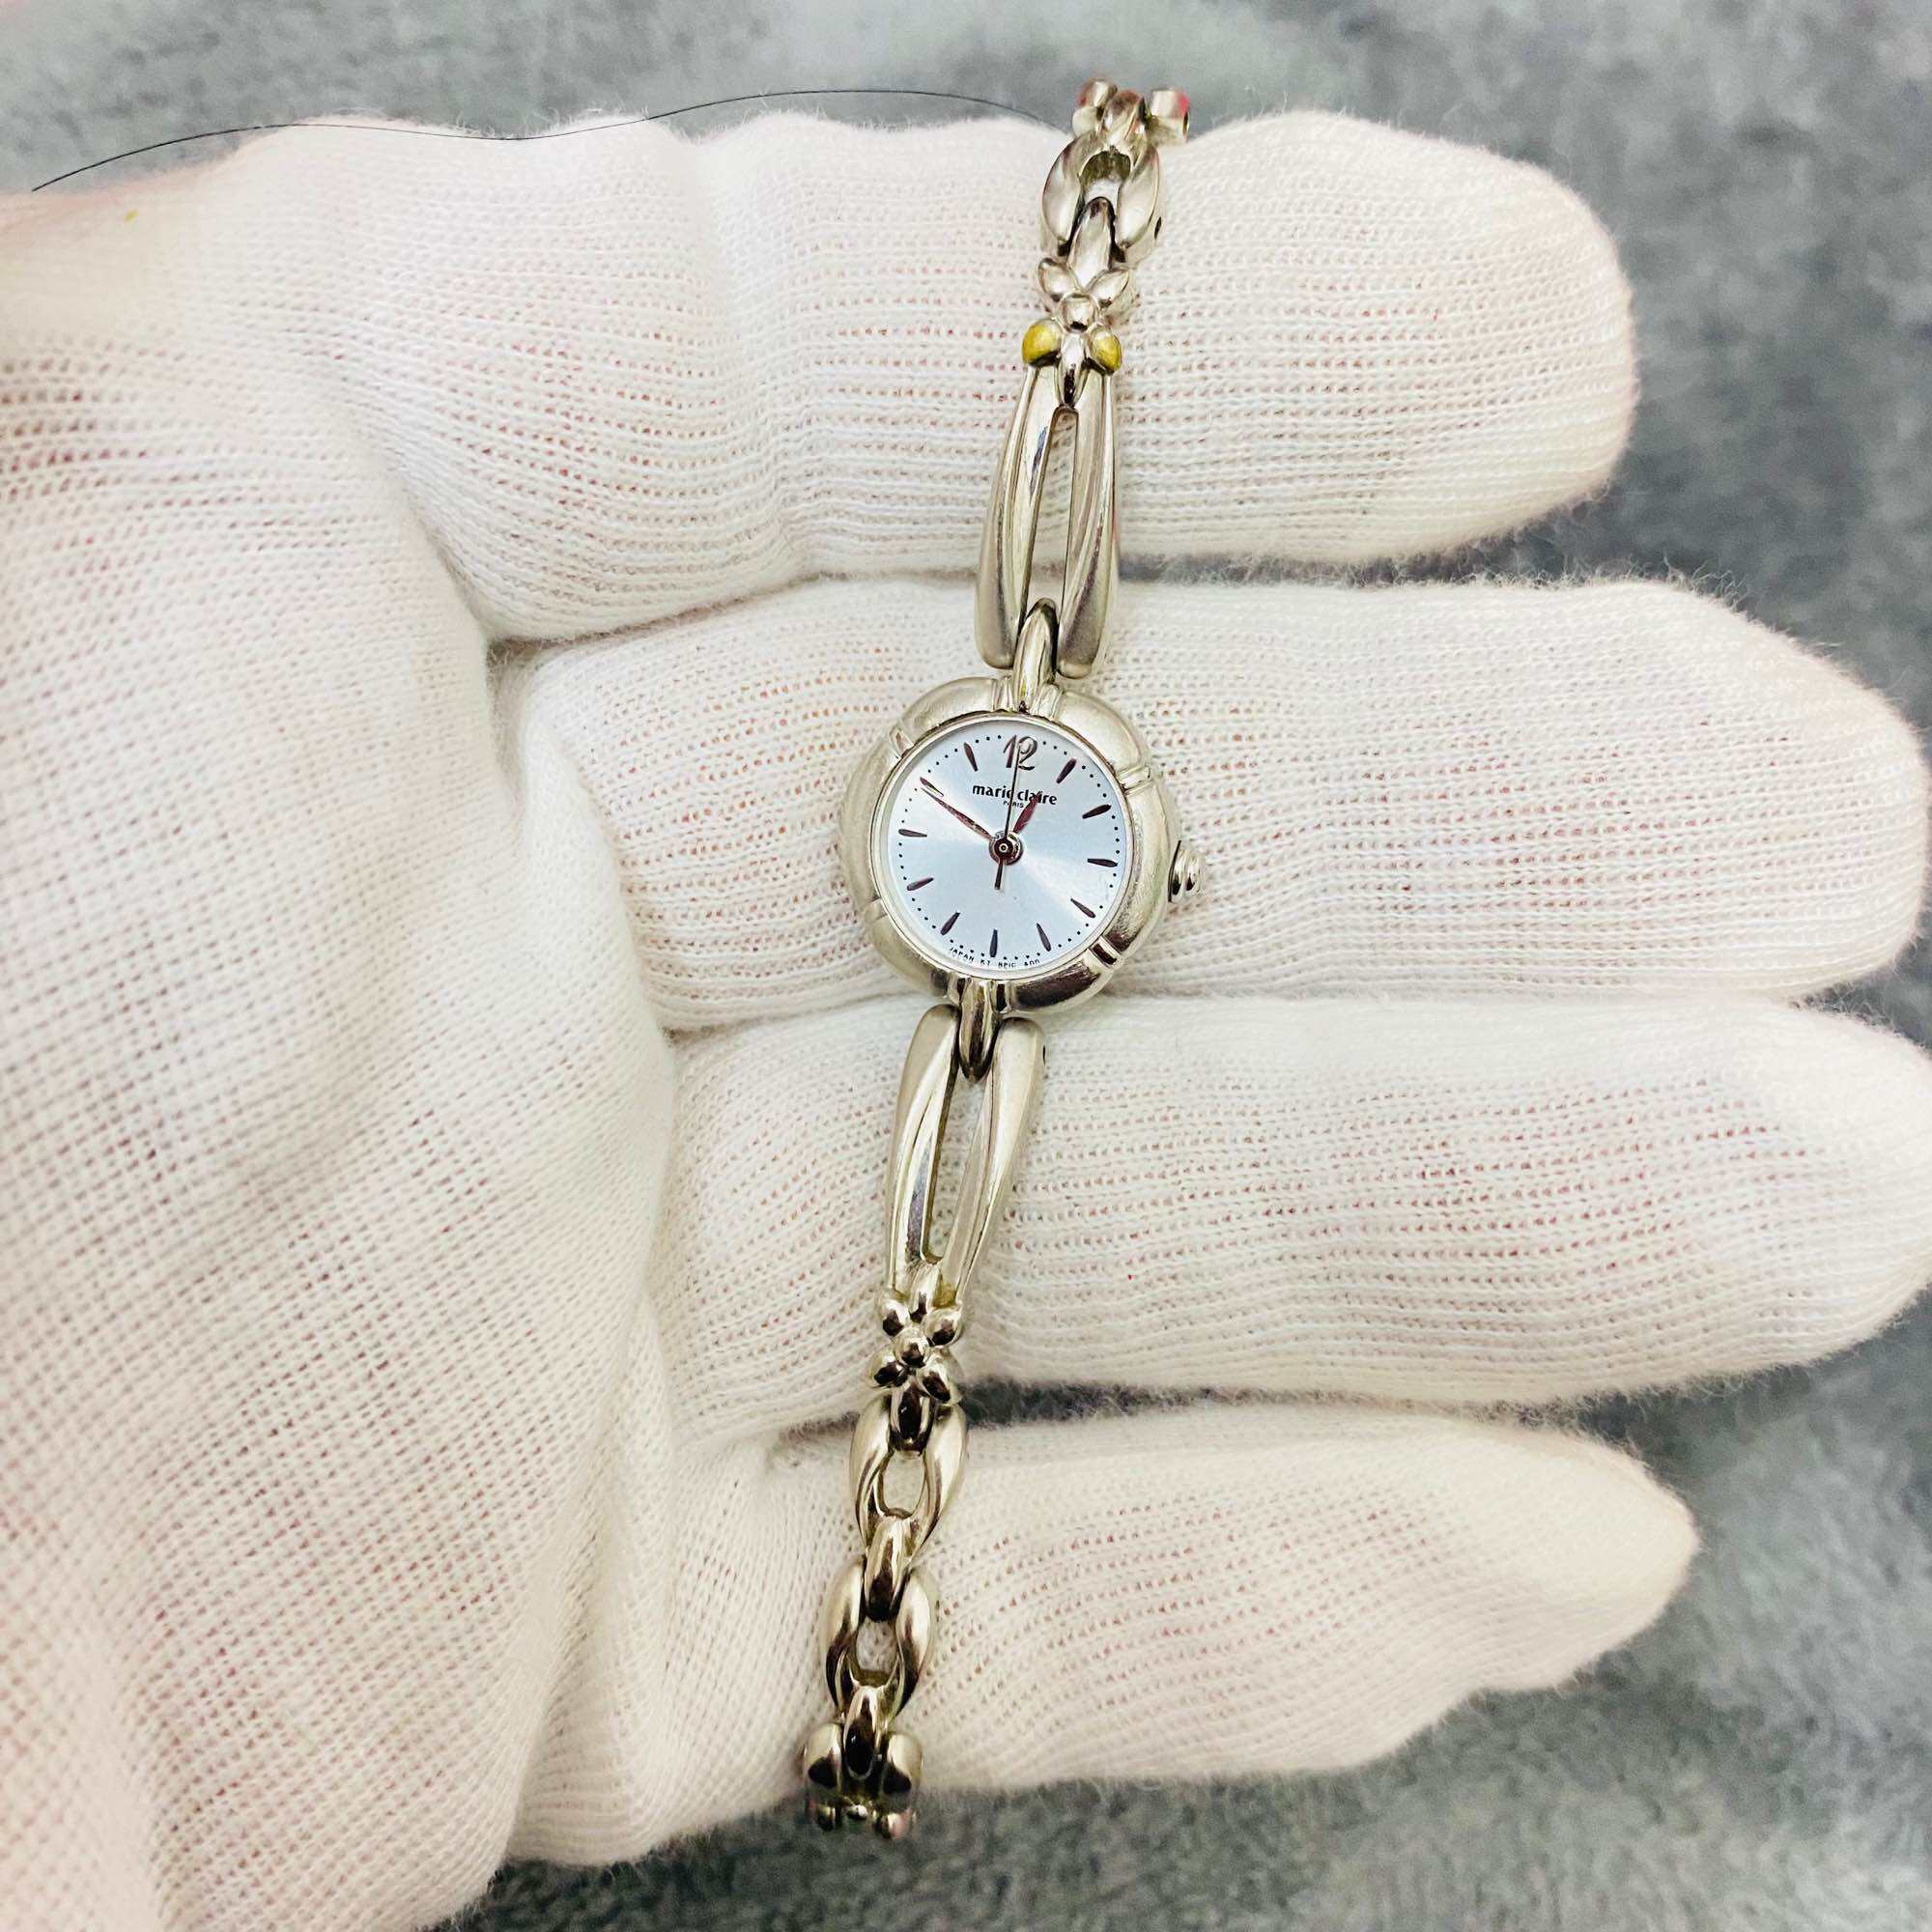 Đồng hồ nữ Marie Claire ( Orient Nhật Bản ) lắc nữ size 20mm dây khóa zin thép không rỉ độ mới cao 95%